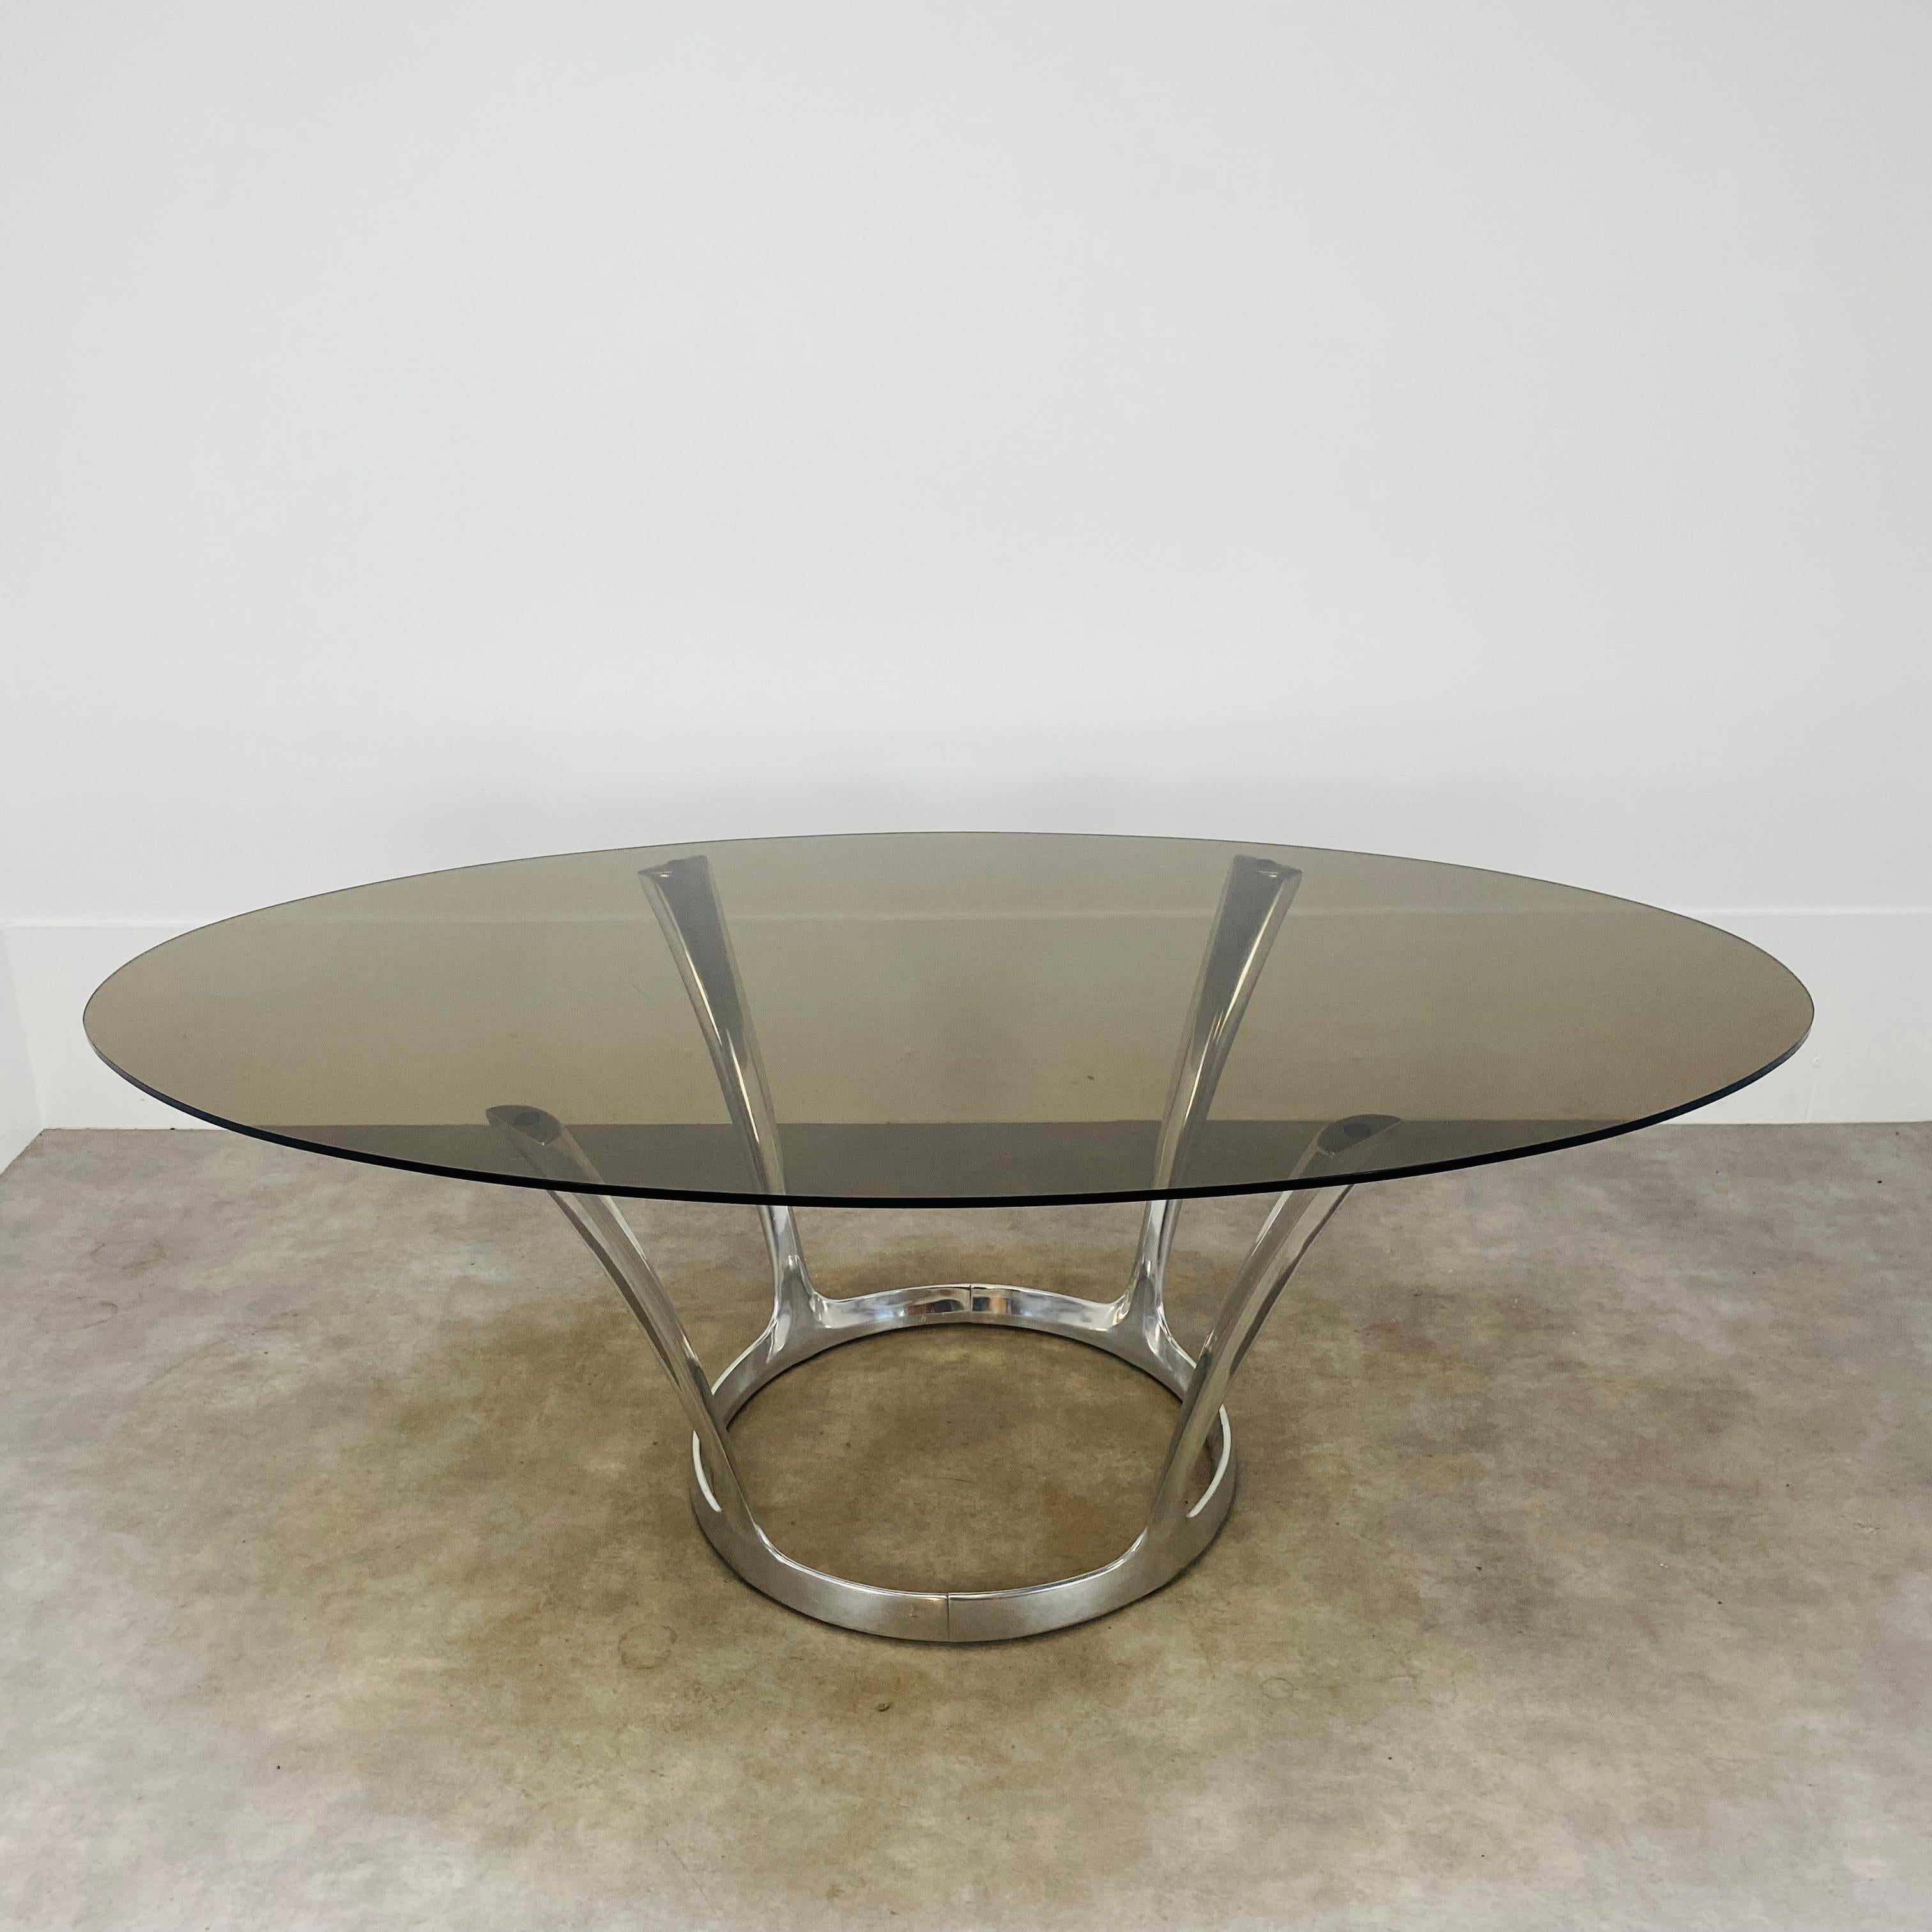 Ovaler Esszimmertisch des französischen Designers Michel Charron, typisches Design aus den siebziger Jahren. 
Sehr guter Zustand, seltene Gebrauchsspuren auf dem Glas und dem Aluminiumsockel. Keine Splitter auf dem Glas. Der Tischfuß ist zerlegbar. 